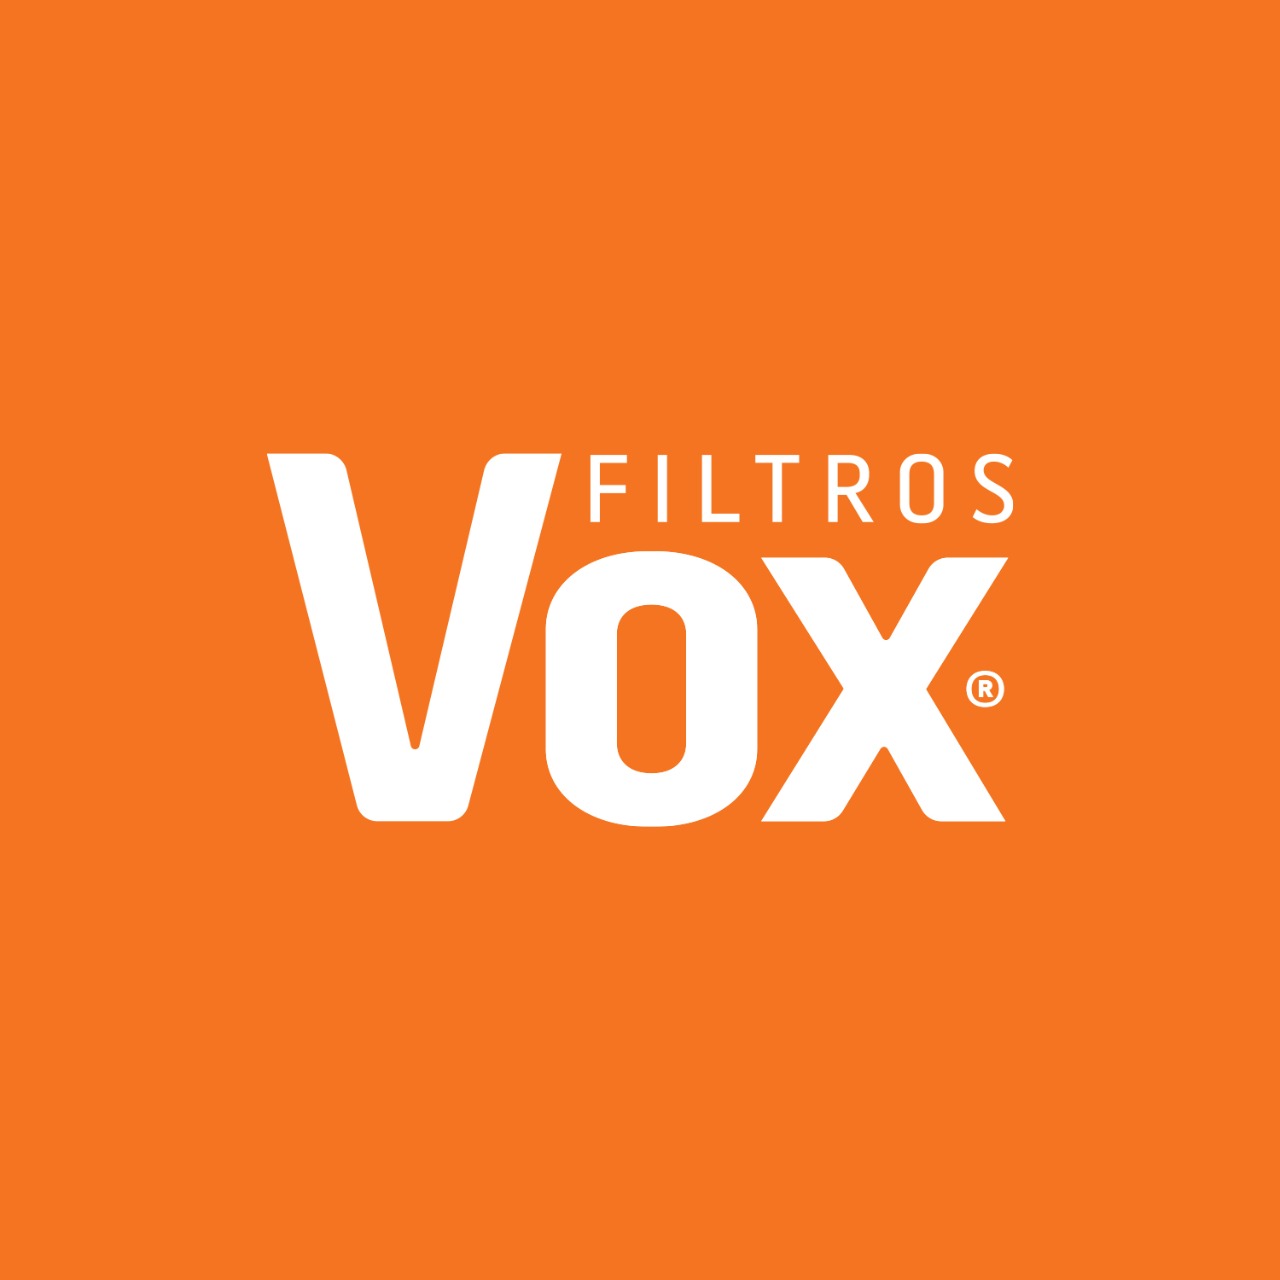 Ricambi - Produtos da marca Vox Filtros